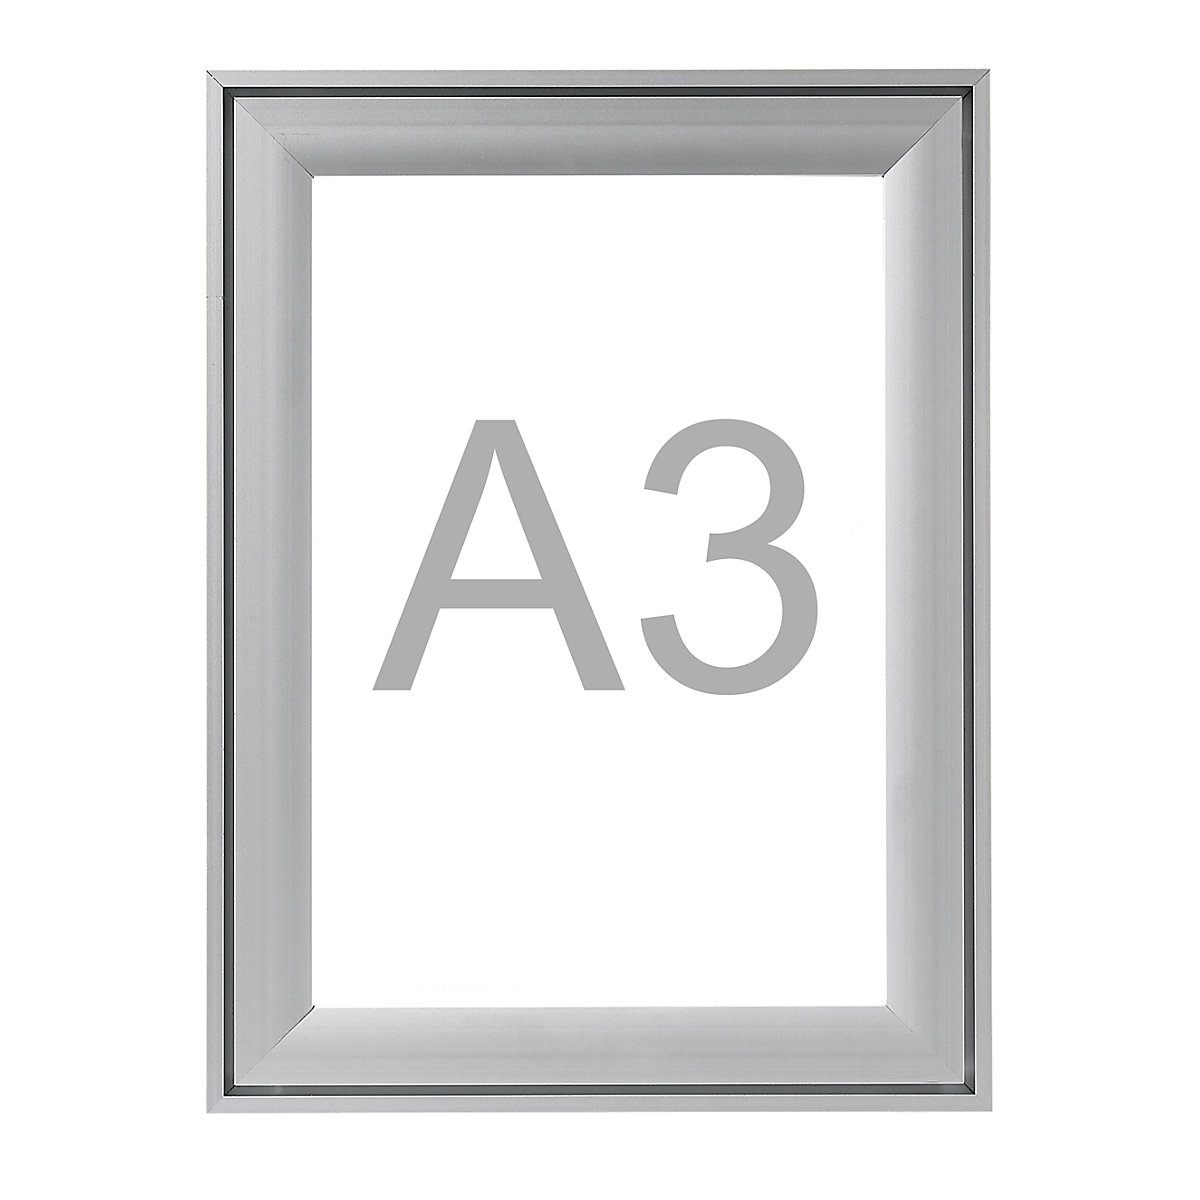 Pregibni okvir Premium, aluminijast profil, DE 2 kosa, za DIN A3, VxŠ 474 x 351 mm-6